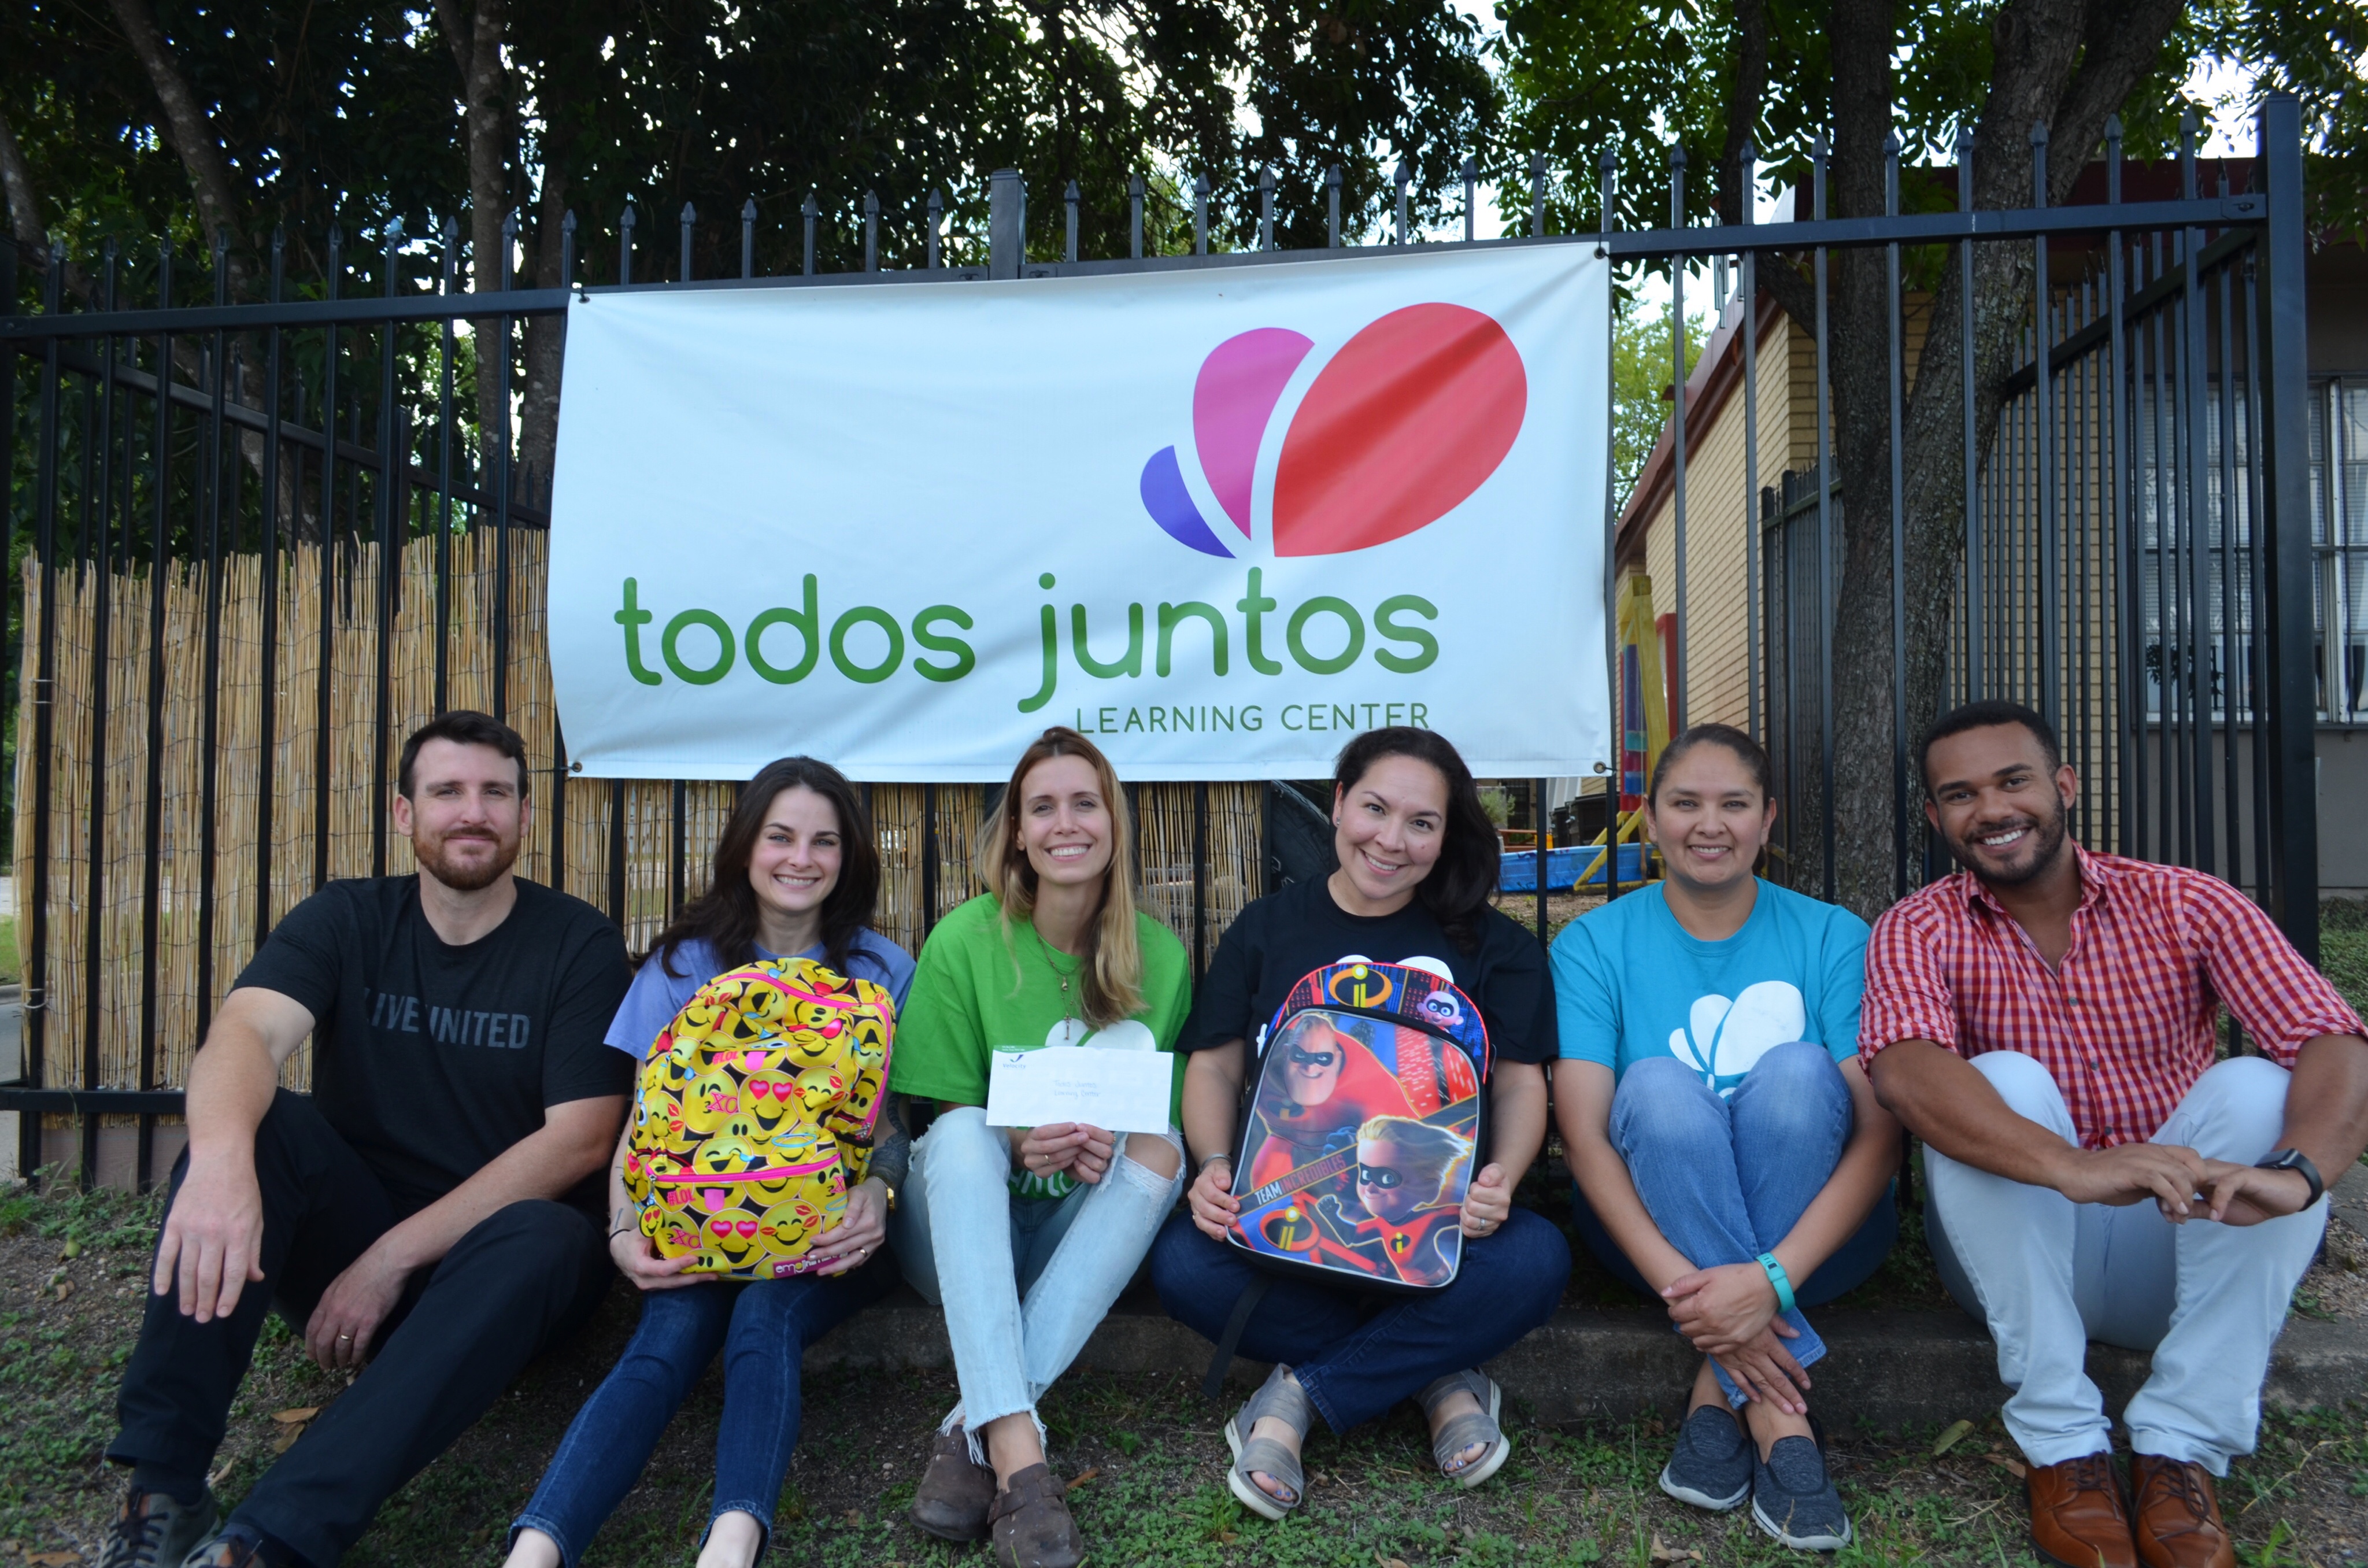 Community Partner Spotlight: Todos Juntos, Everyone is Family